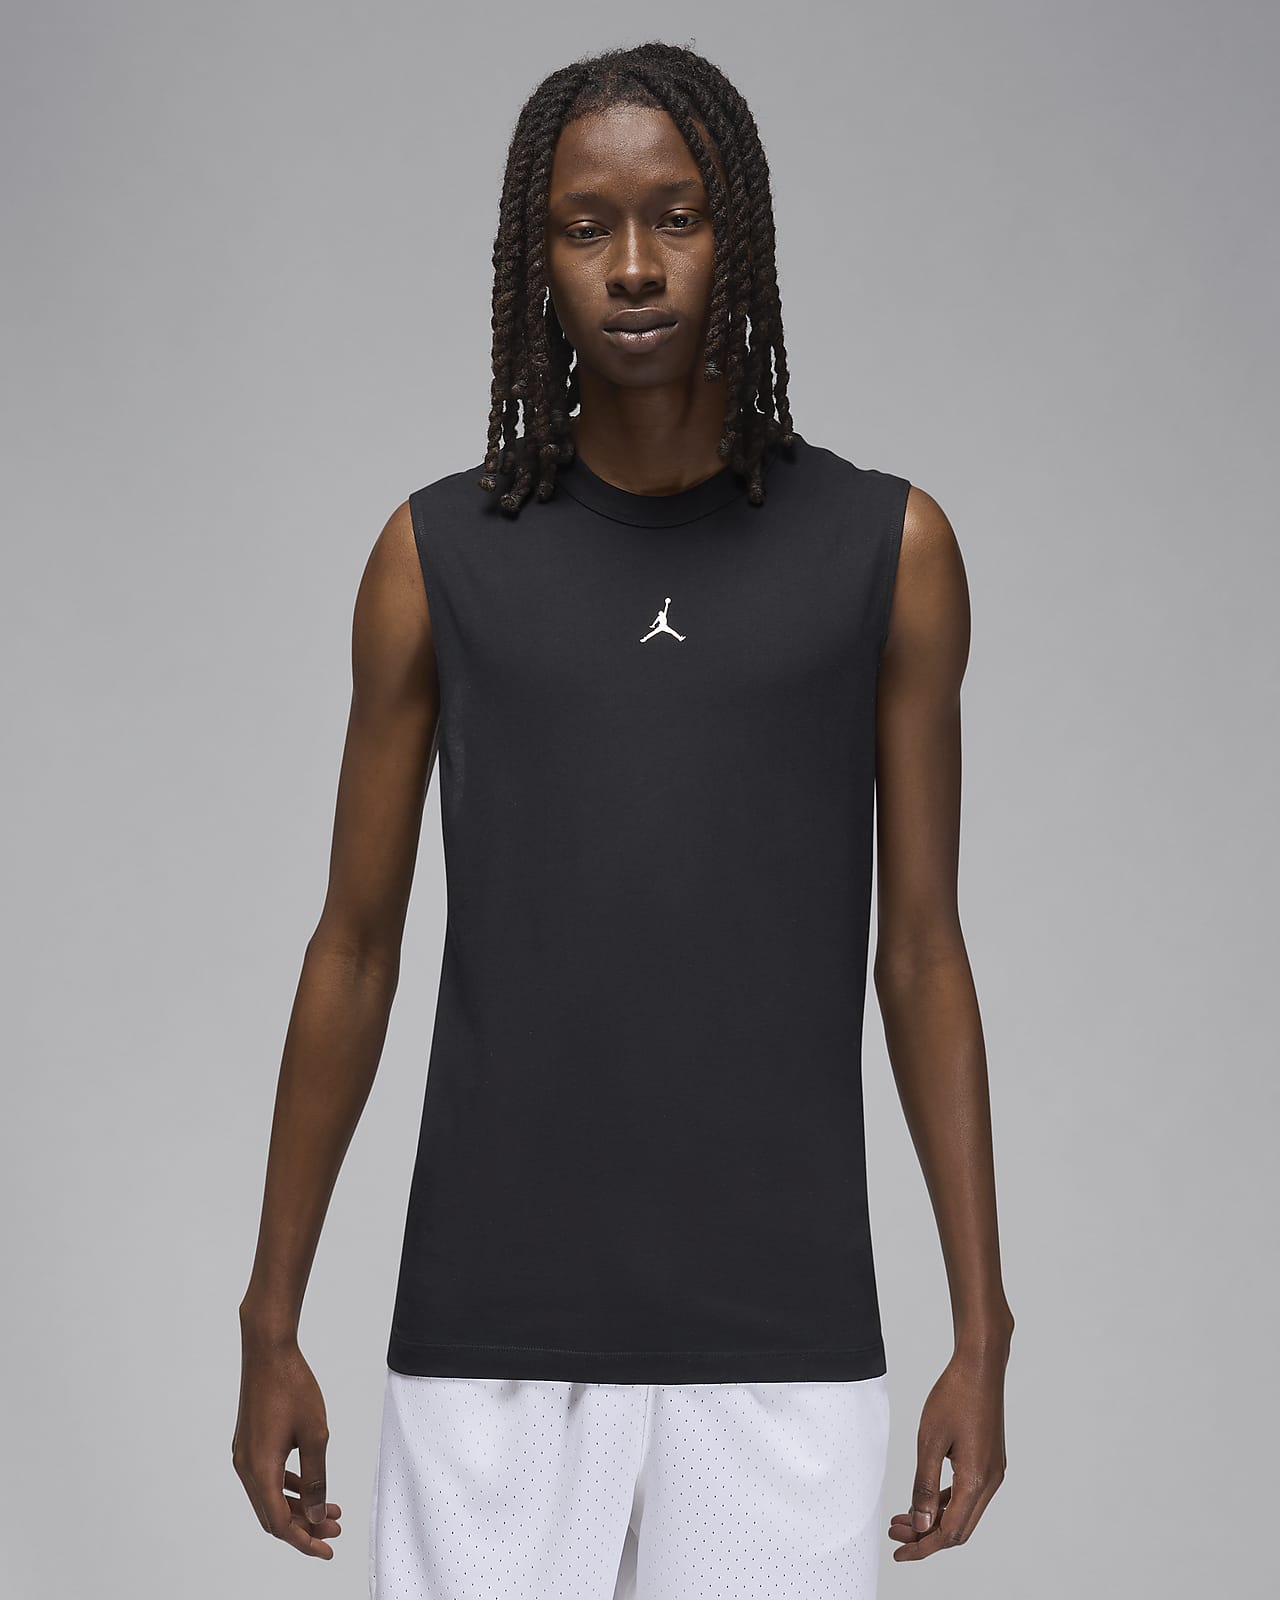 Jordan Tank Tops & Sleeveless Shirts. Nike CA